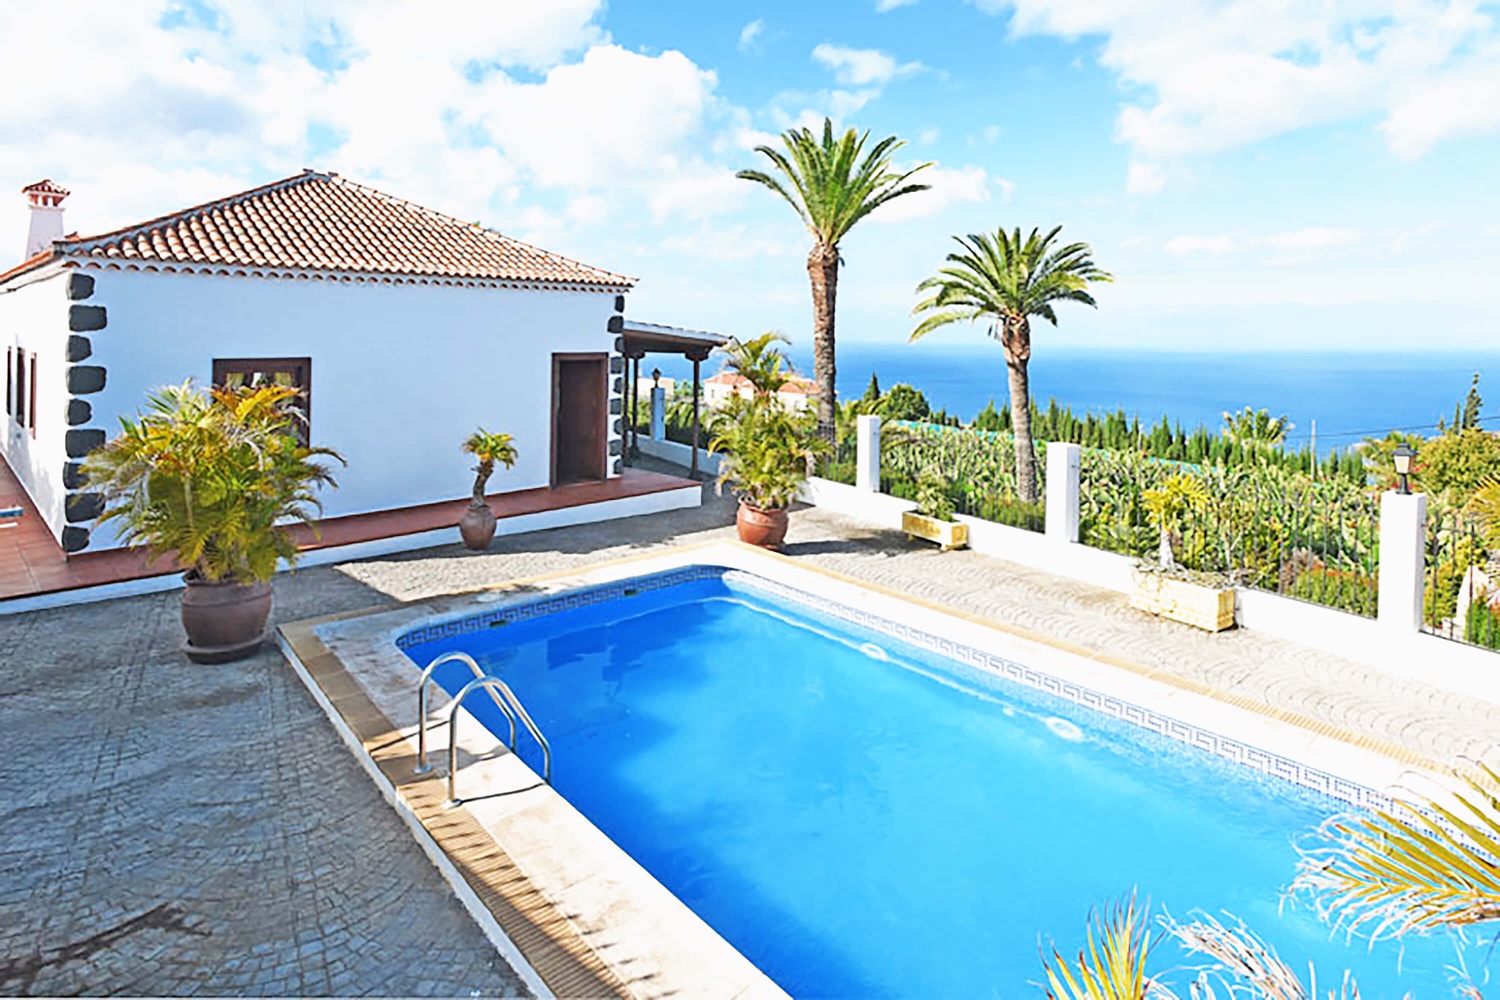 Elegante casa vacanze circondata da palme con ampio spazio esterno, piscina privata ed eccellente vista mare